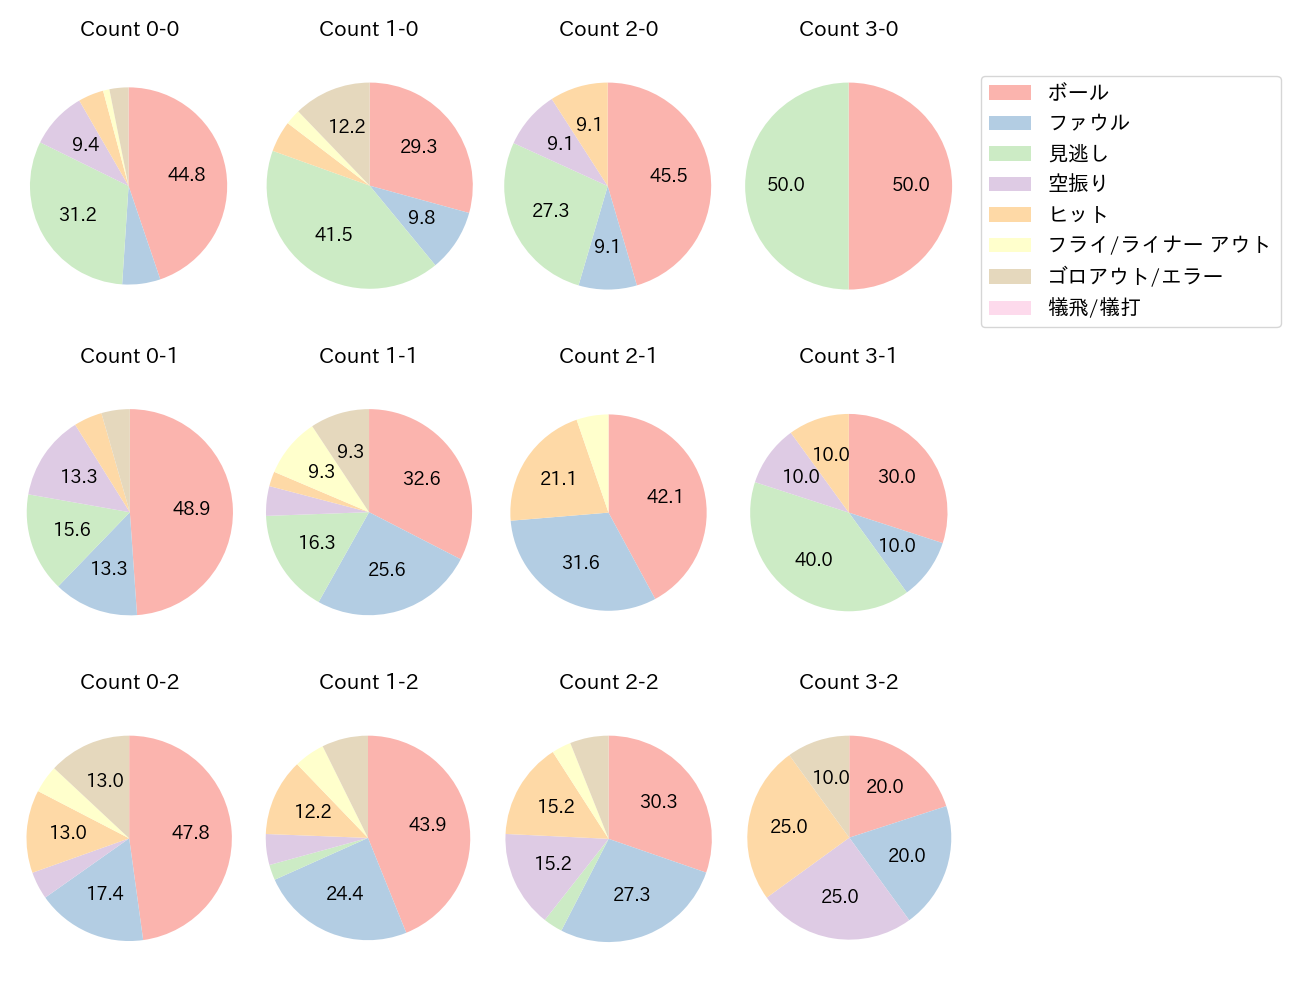 岡島 豪郎の球数分布(2021年5月)